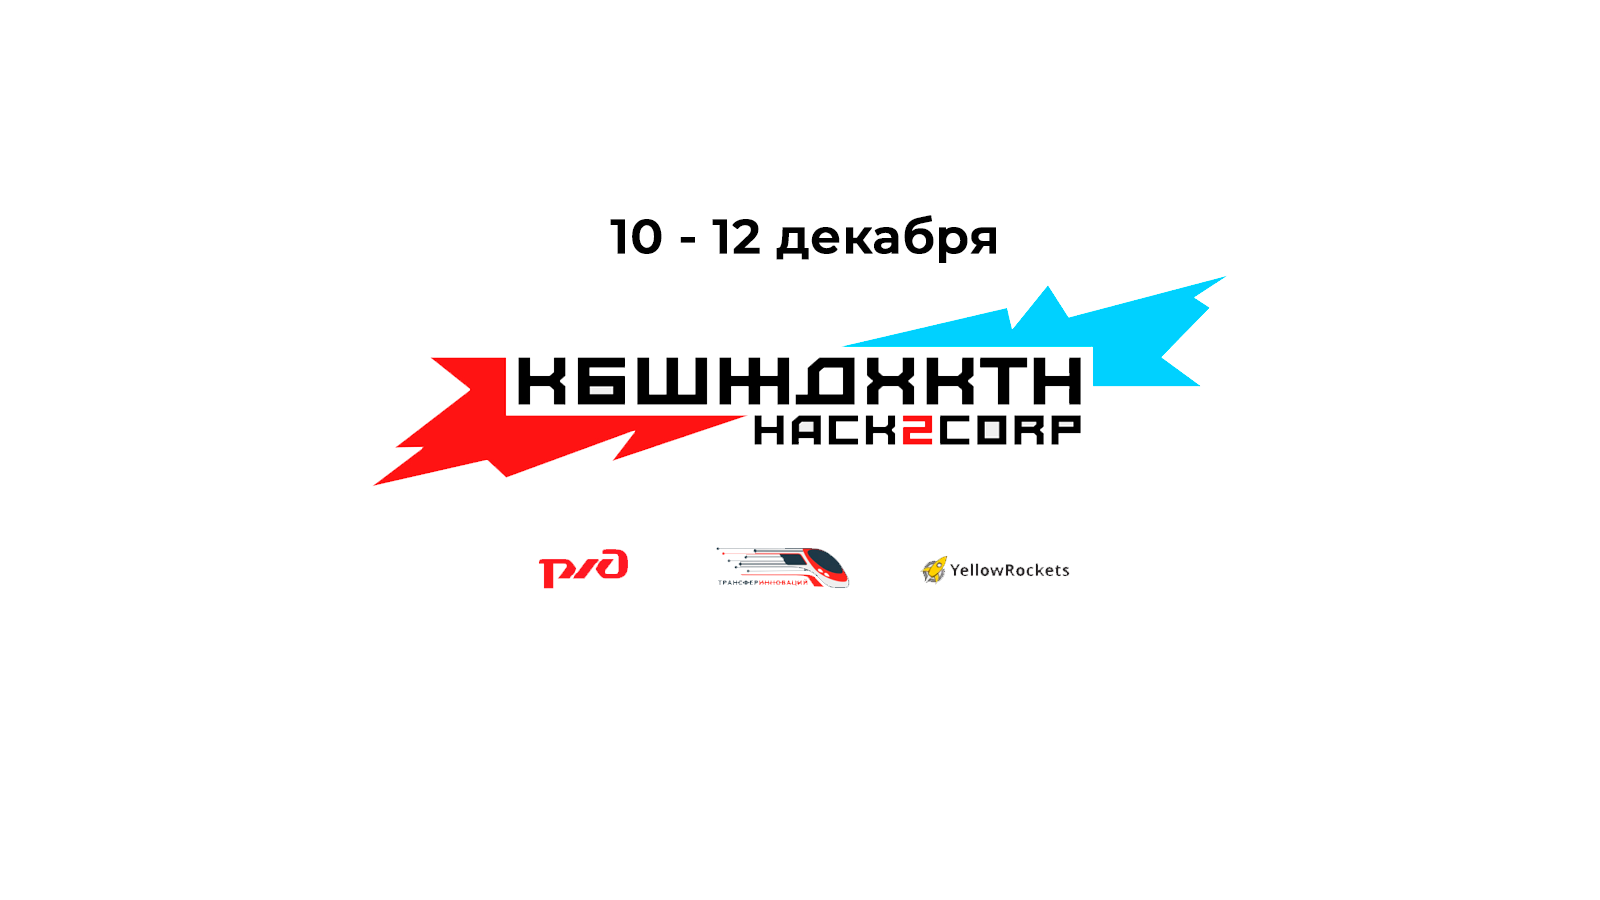 Хакатон Куйбышевской железной дороги КБШЖДХКТН Hack2Corp